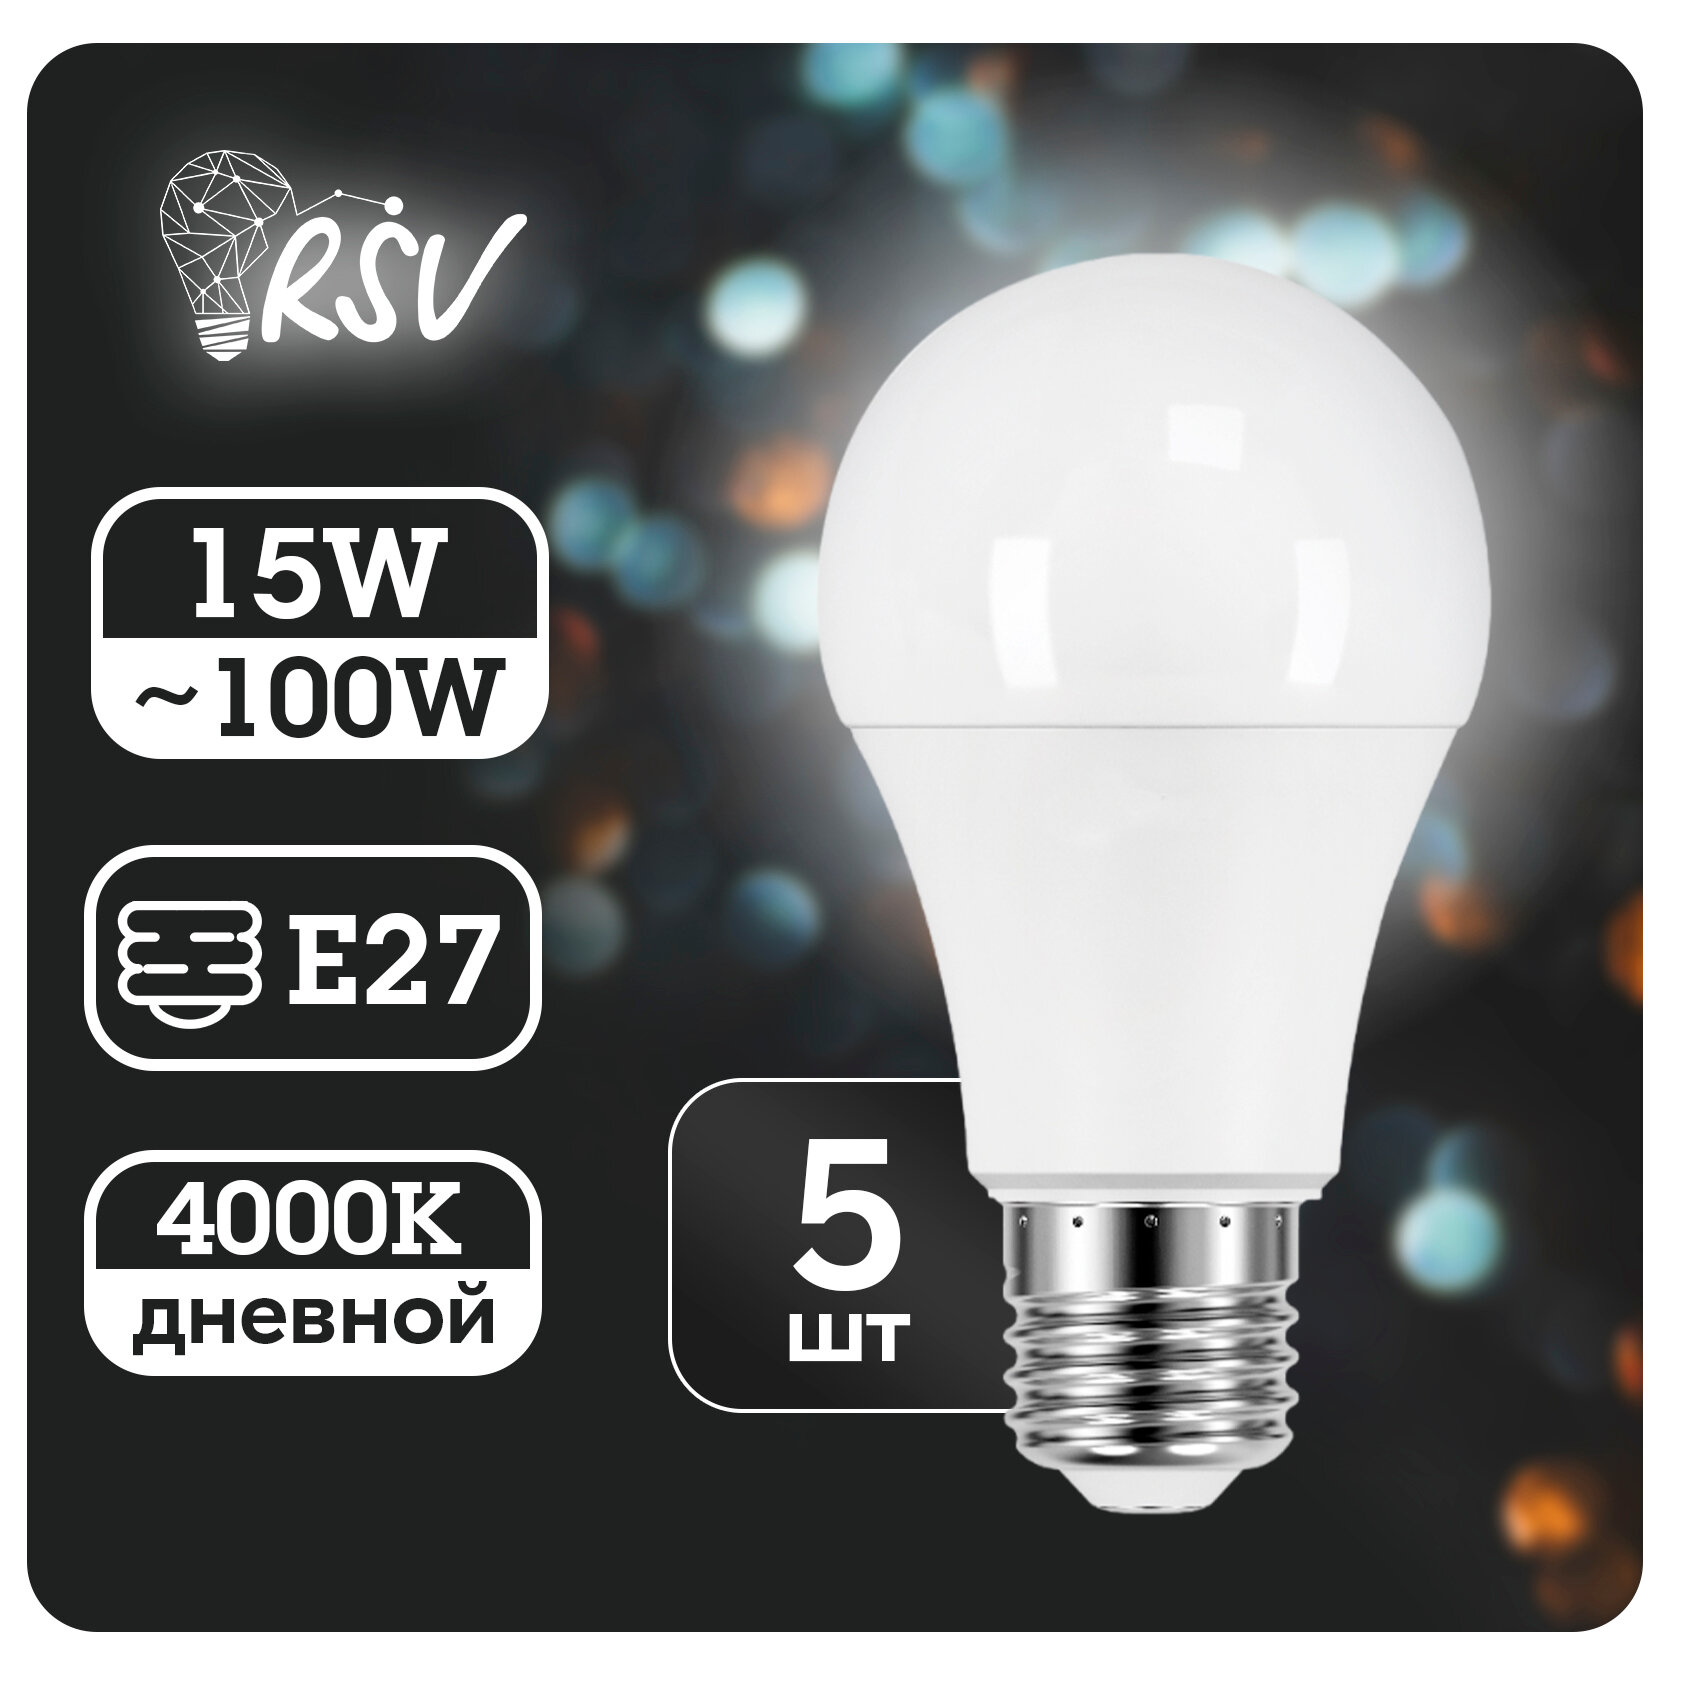 Светодиодная лампа RSV-A60-15W-4000K-E27 P, в комплекте 5 штук